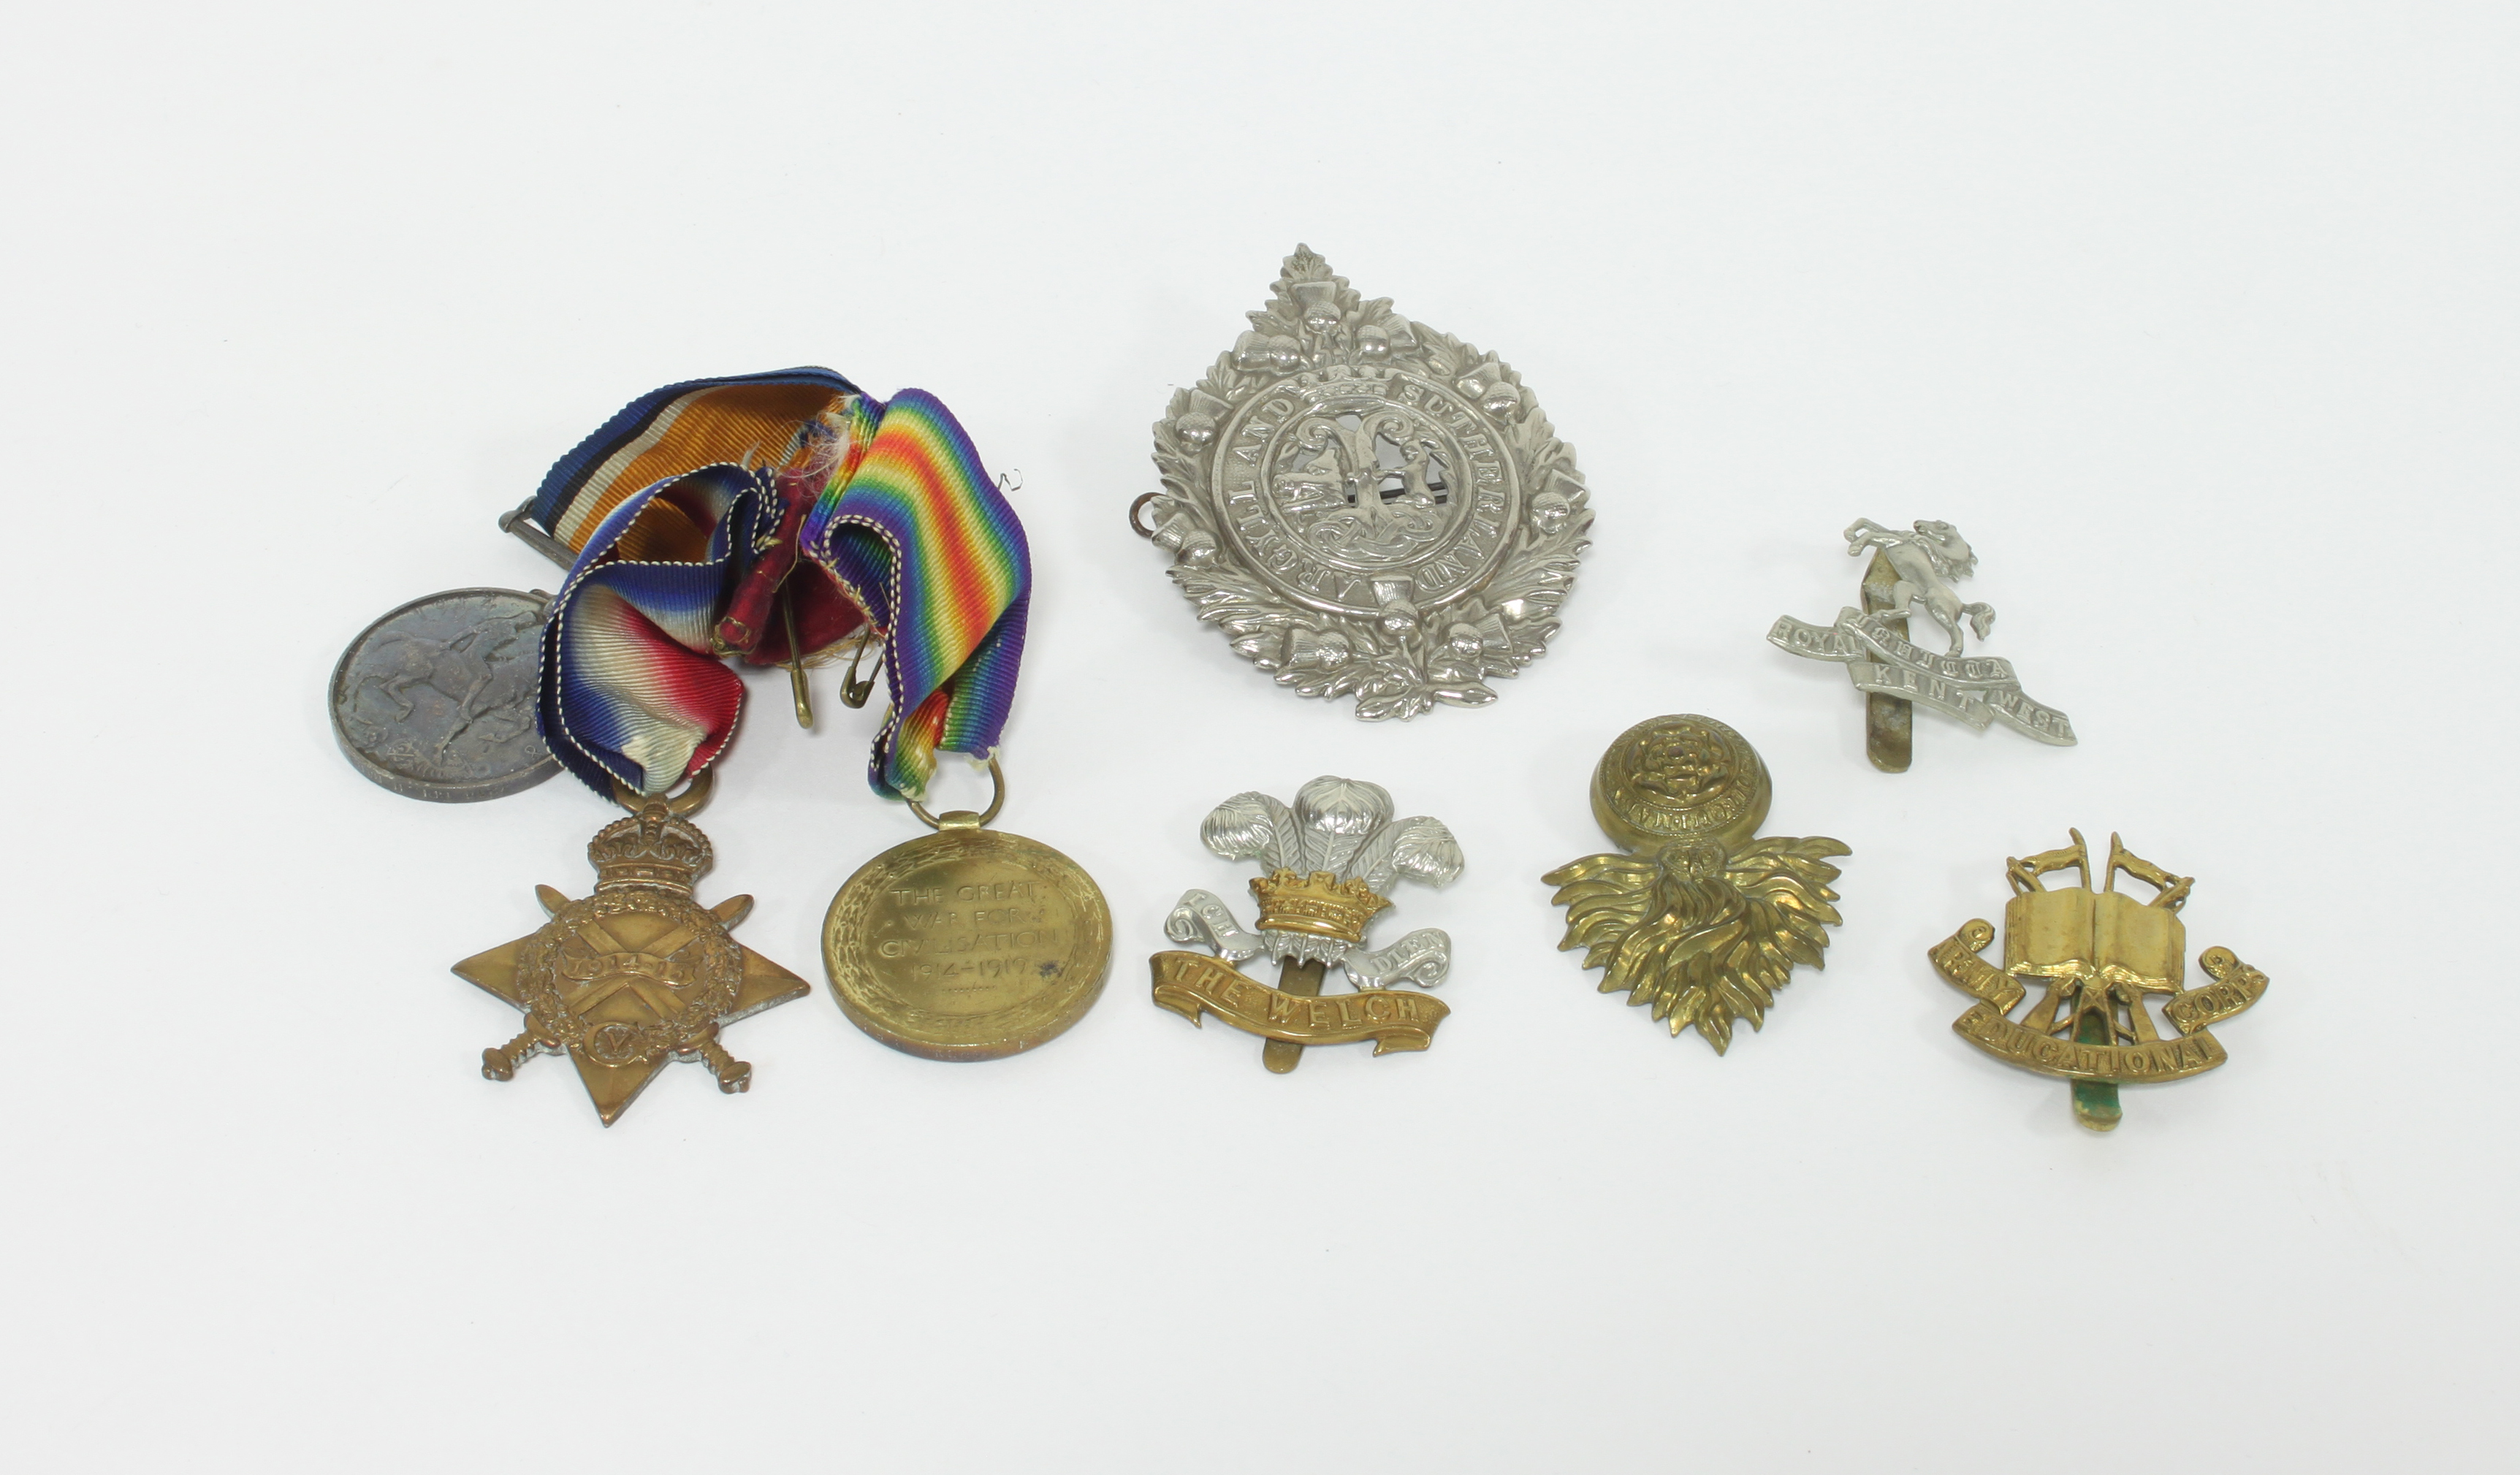 1914 - 1918 War Medal, 1914 - 1919 medal